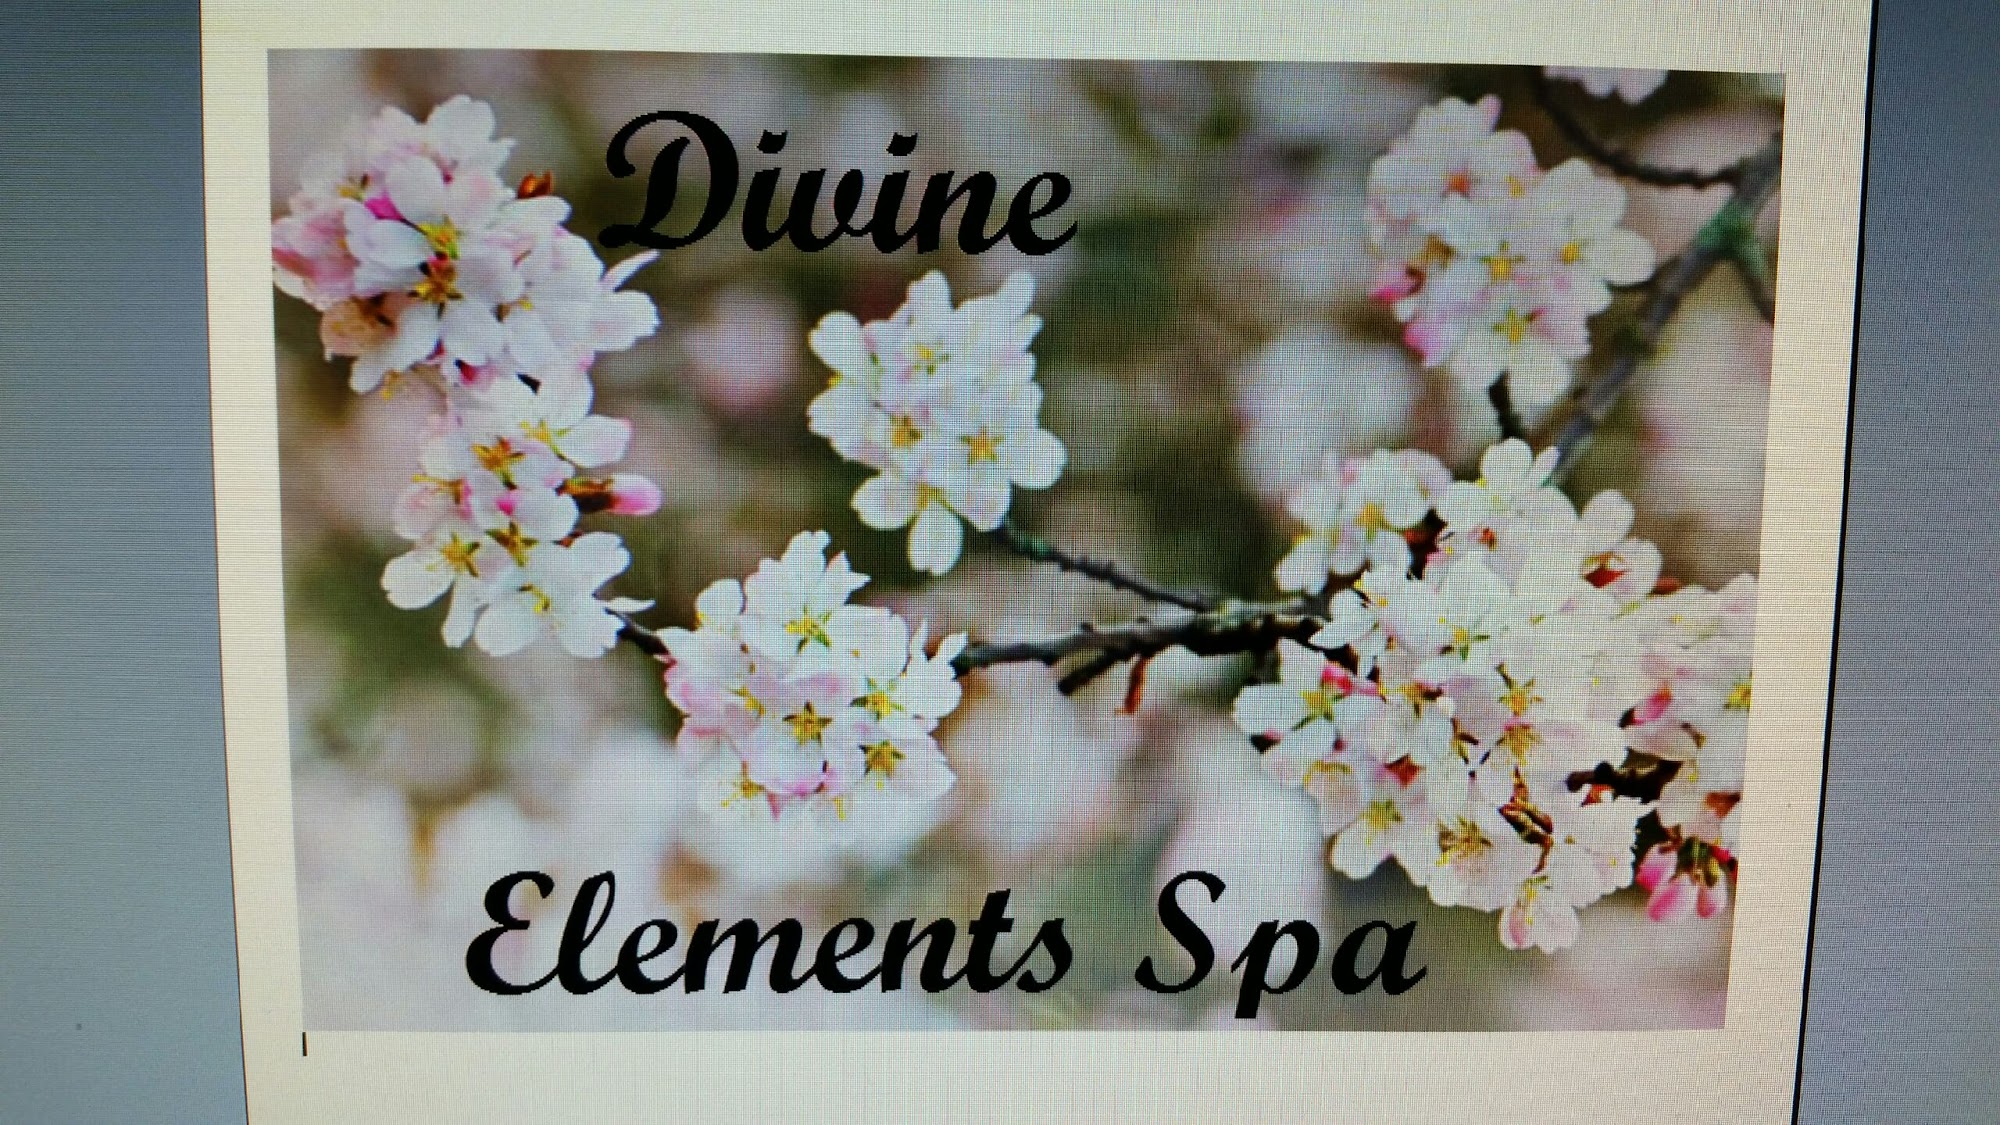 Divine Elements Spa 21724 Lorain Rd # 4, Fairview Park Ohio 44126